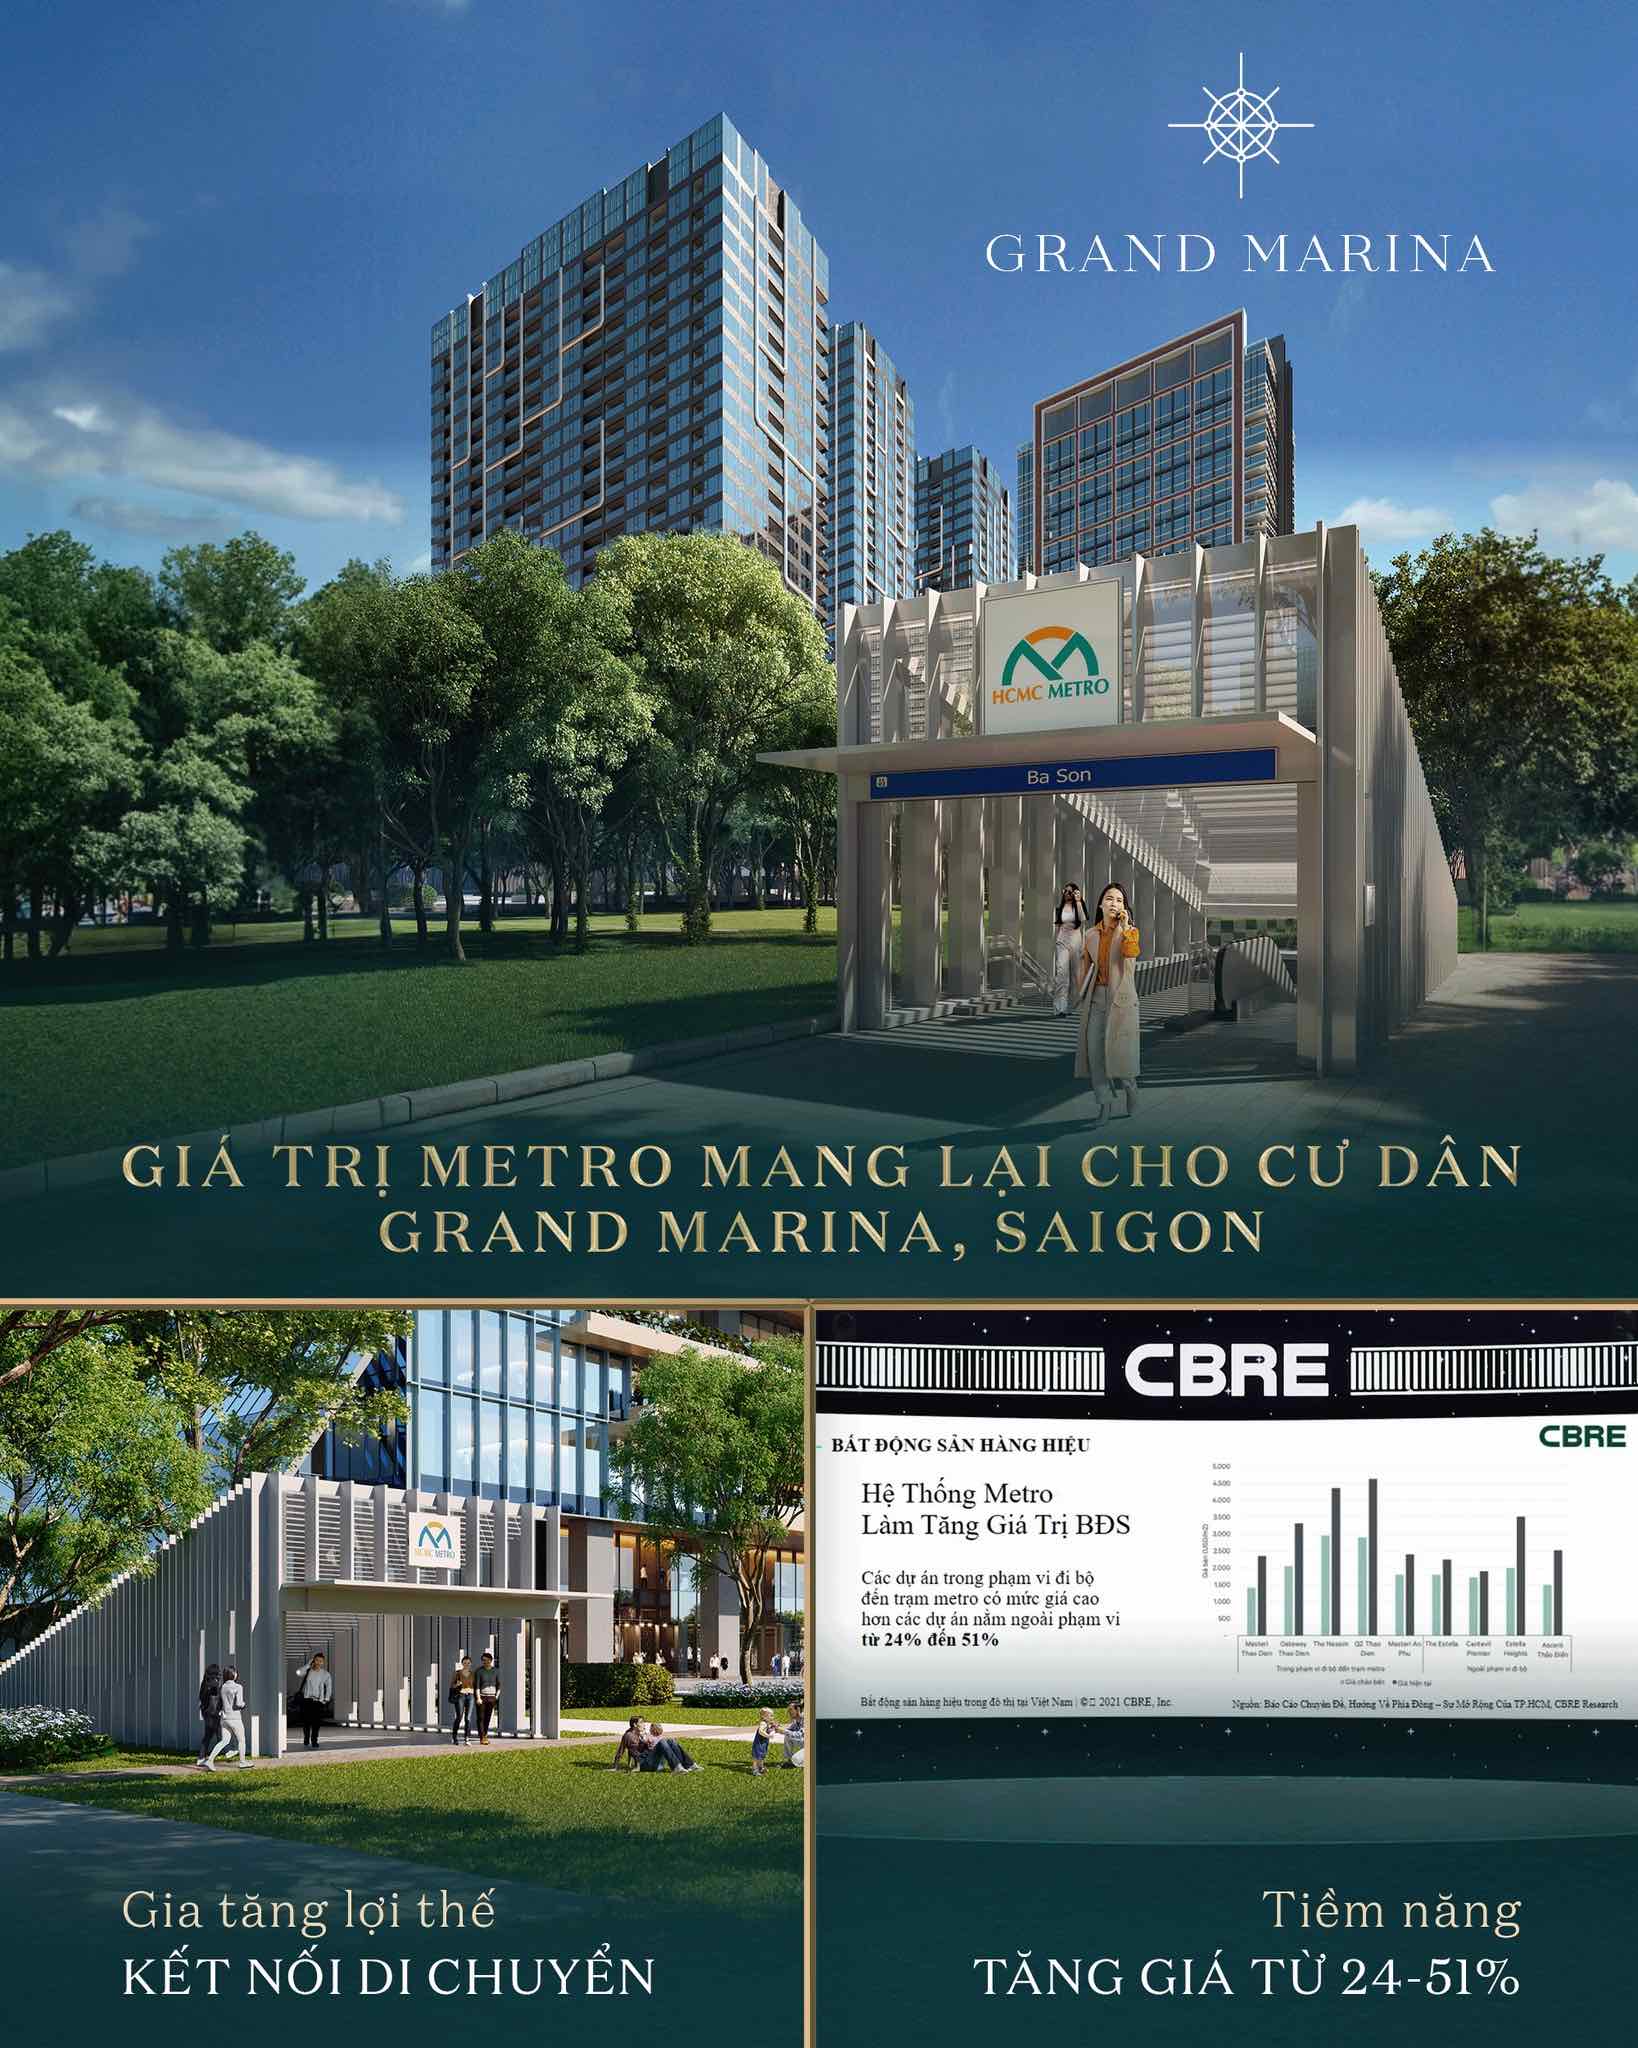 Grand Marina Saigon thừa hưởng ngay trạm ga Metro số 1 gia tăng giá trị dành cho khu căn hộ hàng hiệu JW Marriott & Marriott.